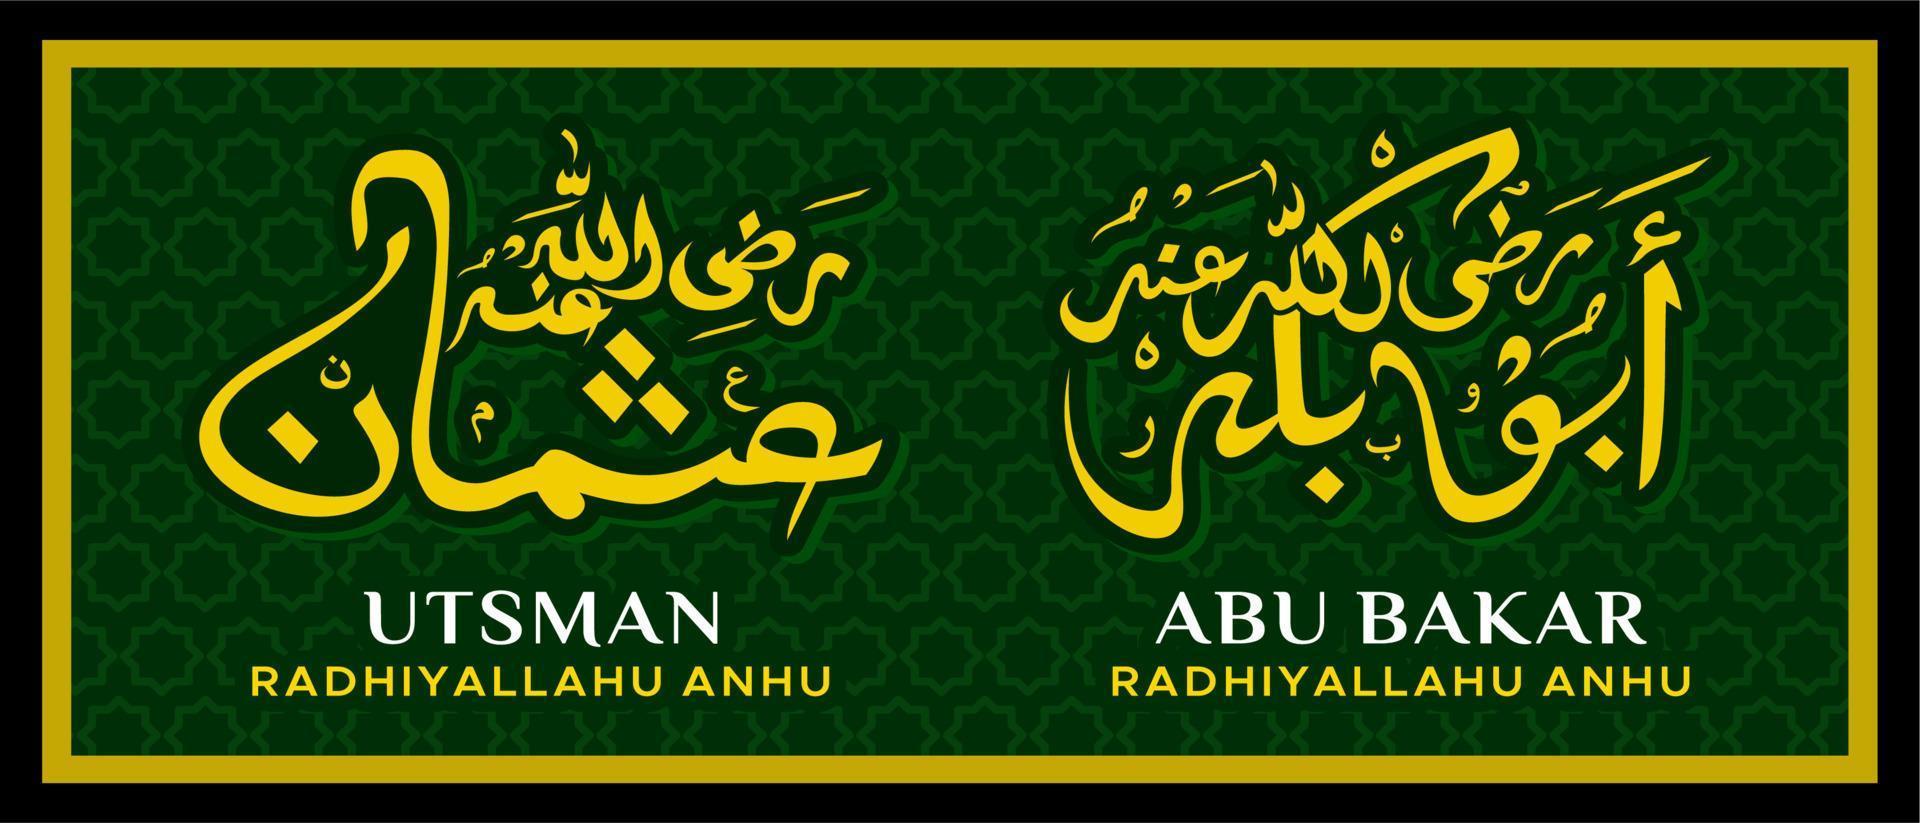 traditionell arabisk kalligrafi abu bakar och utsman bin affan vänner till profeten muhammed vektordesign vektor